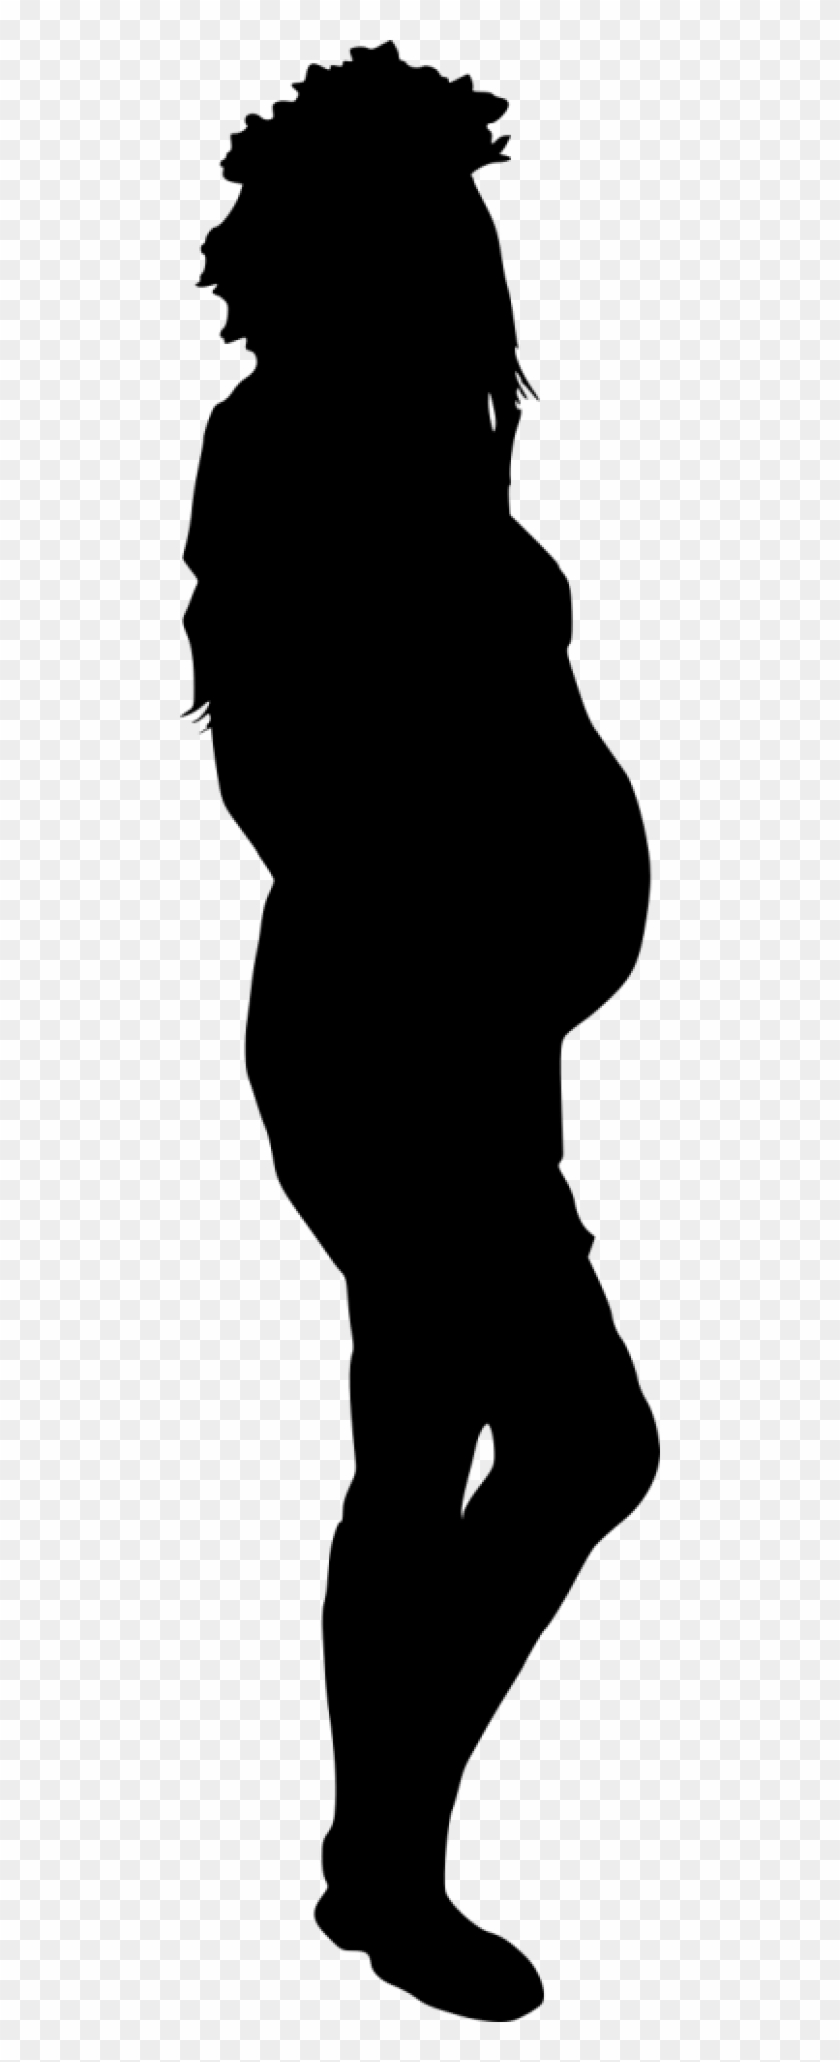 Pregnant Woman Silhouette - Pregnant Woman Silhouette #1529776